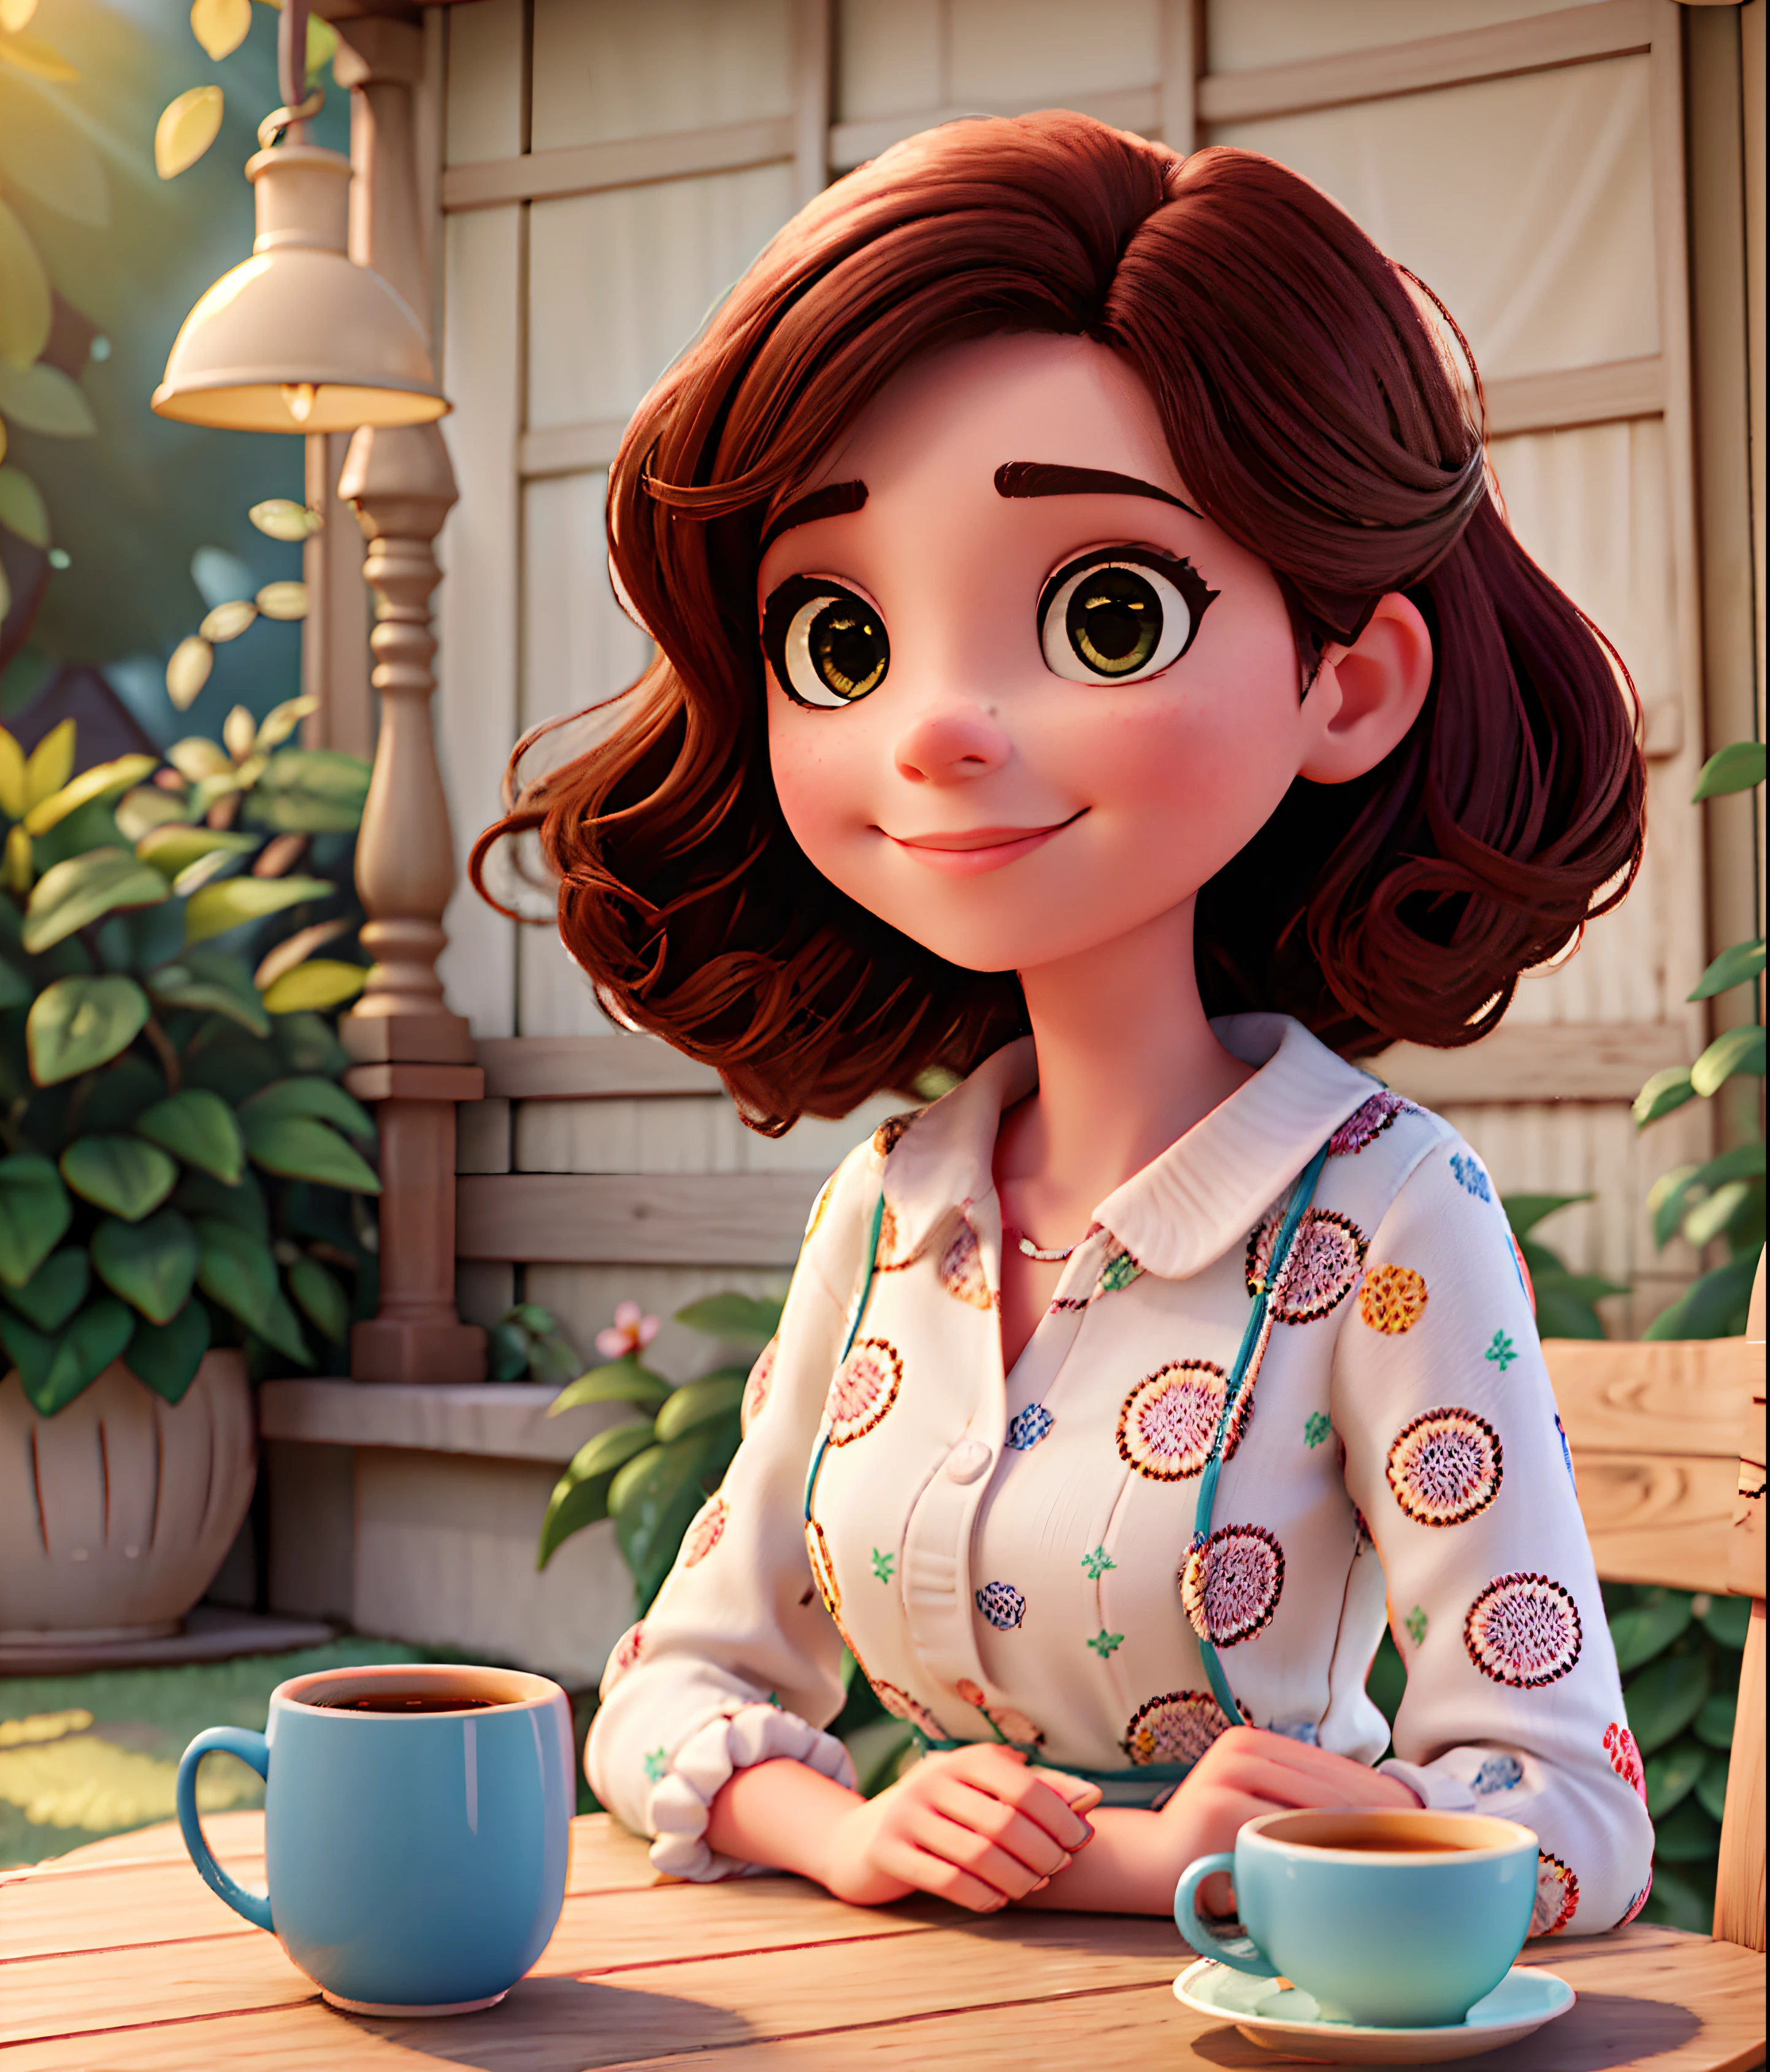 Pompt Disney Pixar Красивая бразильянка сидит и пьет кофе за садовым столиком своего дома Симпатичное лицо, очень черные прямые волосы, прямая стрижка до плеч и с челкой. Волосы в японском стиле, карие глаза и очень румяные щеки., В платье в горошек, закрывающем колени, смотрит на тебя любящими глазами и мягкой улыбкой., малая глубина резкости, кинематографический свет, мягкий свет, с подсветкой, микродетали, рендеринг, фотореалистичный, кинематографический, 85 мм 1.4